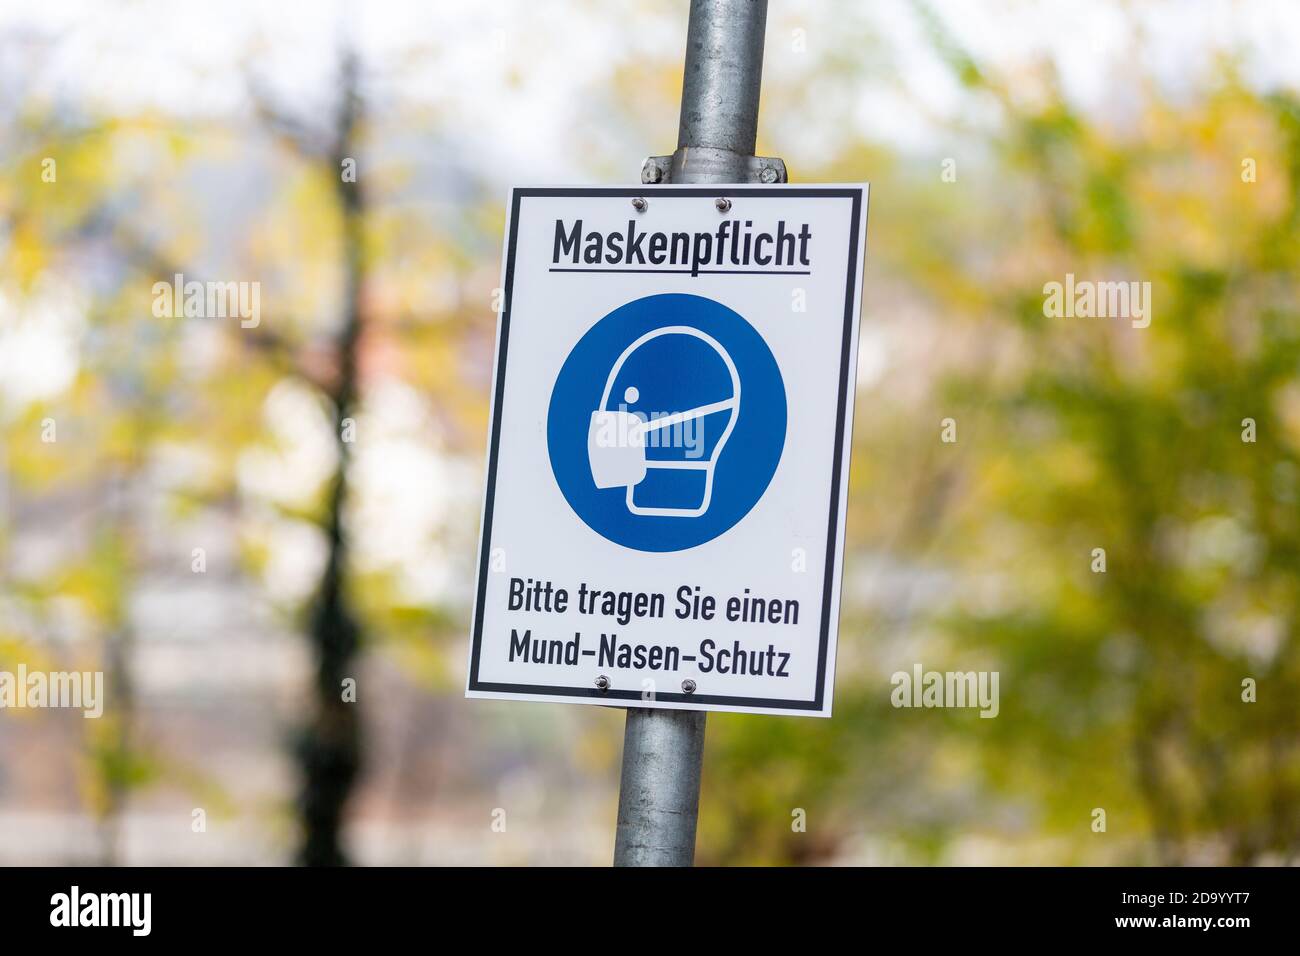 Infosign in einer deutschen Stadt mit deutschem Text. Maskenpflicht, bitte tragen Sie einen Mund-Nasen-Schutz. Maske obligatorisch, bitte Mund und Nase prot tragen Stockfoto